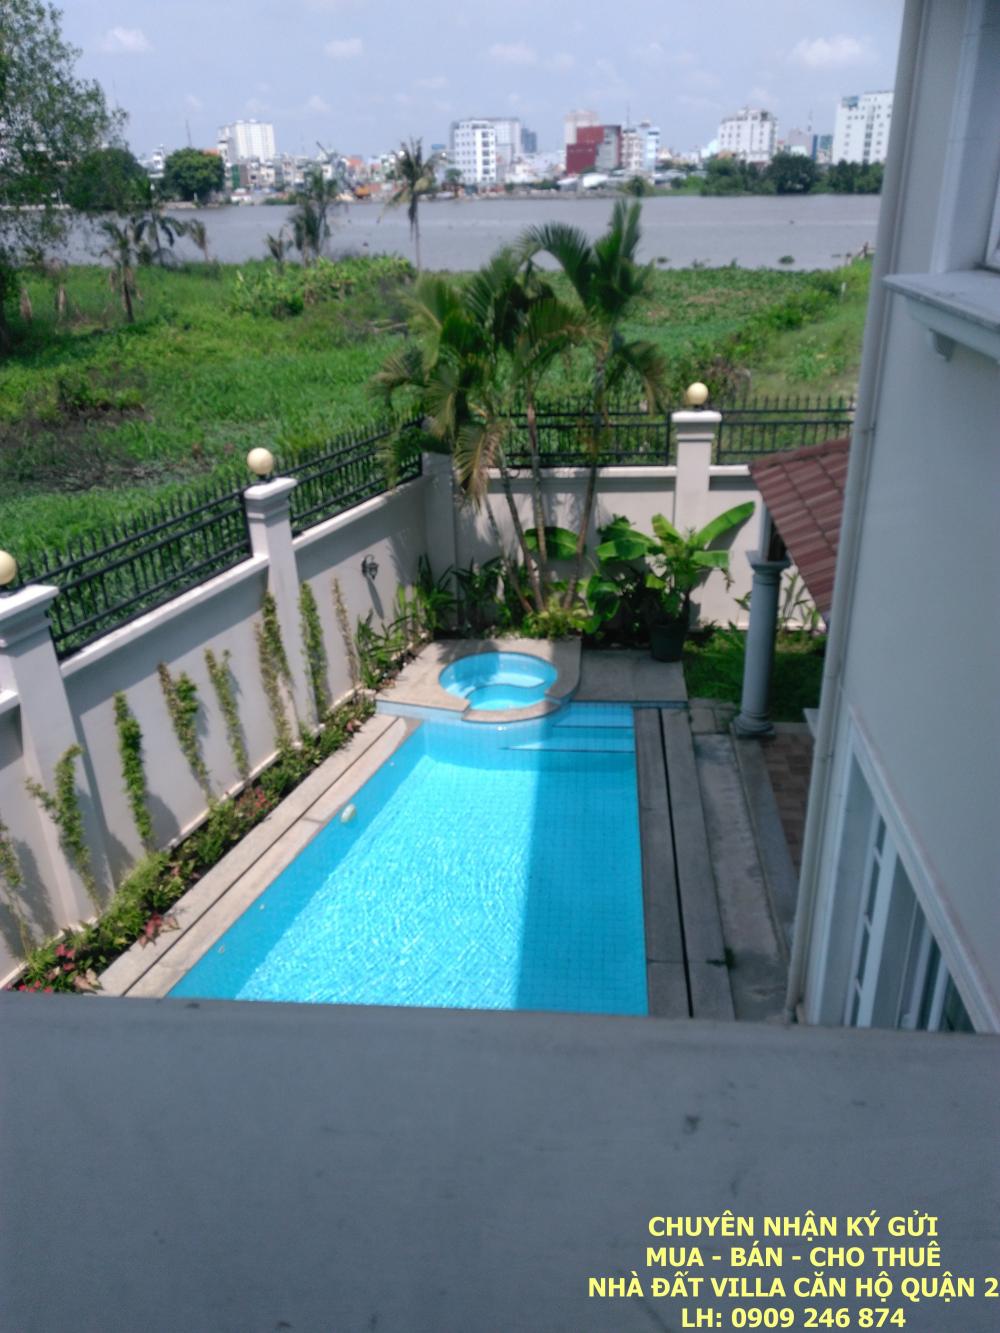 Cho thuê villa sân vườn hồ bơi view sông Sài Gòn, Thảo Điền, Quận 2, 5PN, giá 90tr/tháng 6180120